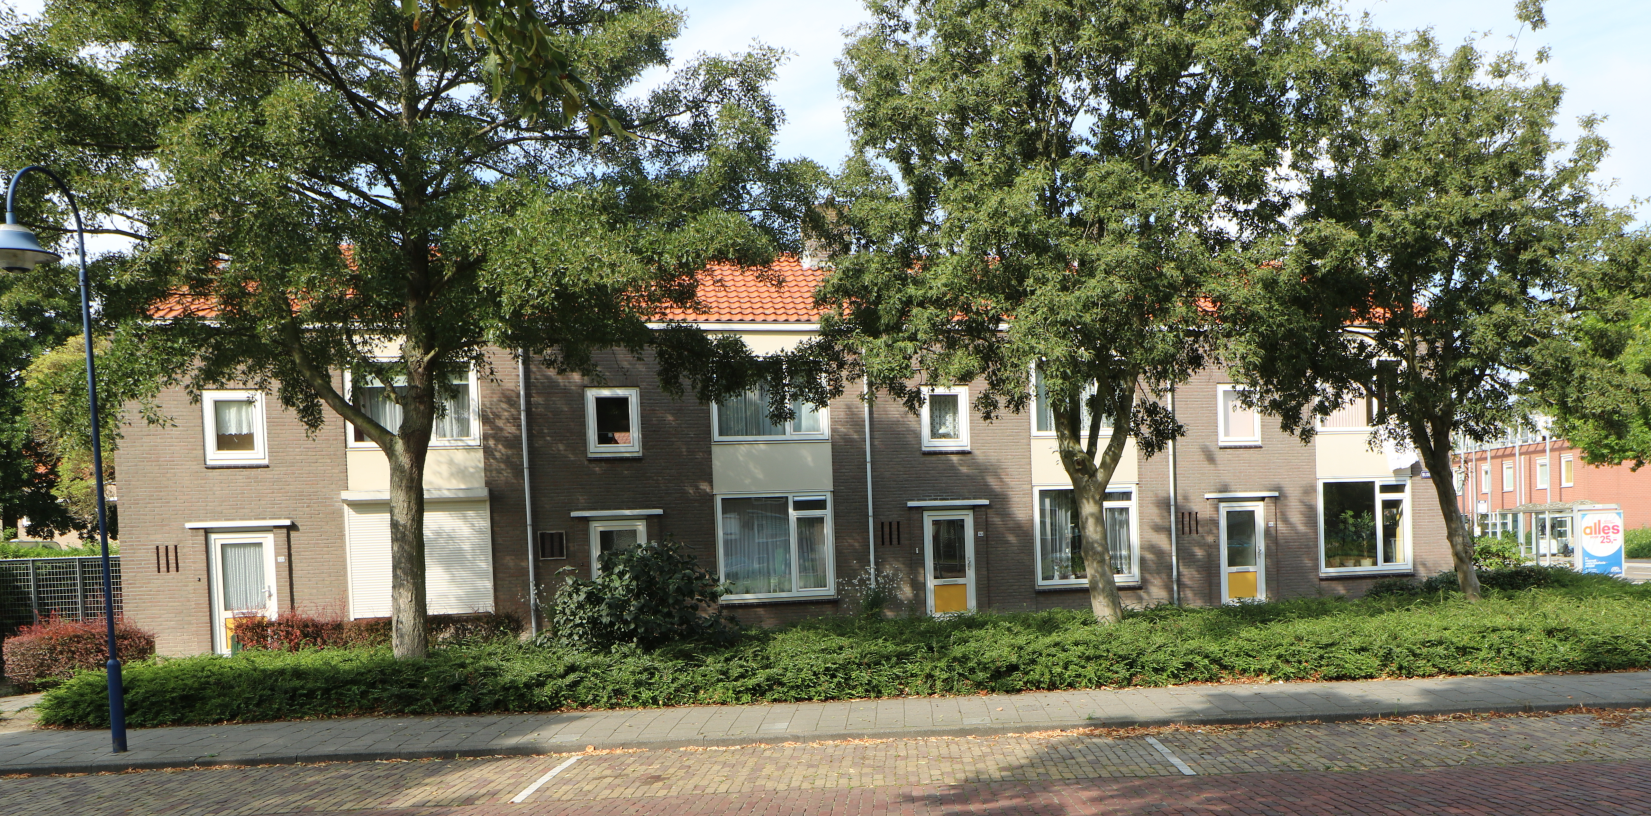 Bloemenlaan 123, 4382 SK Vlissingen, Nederland